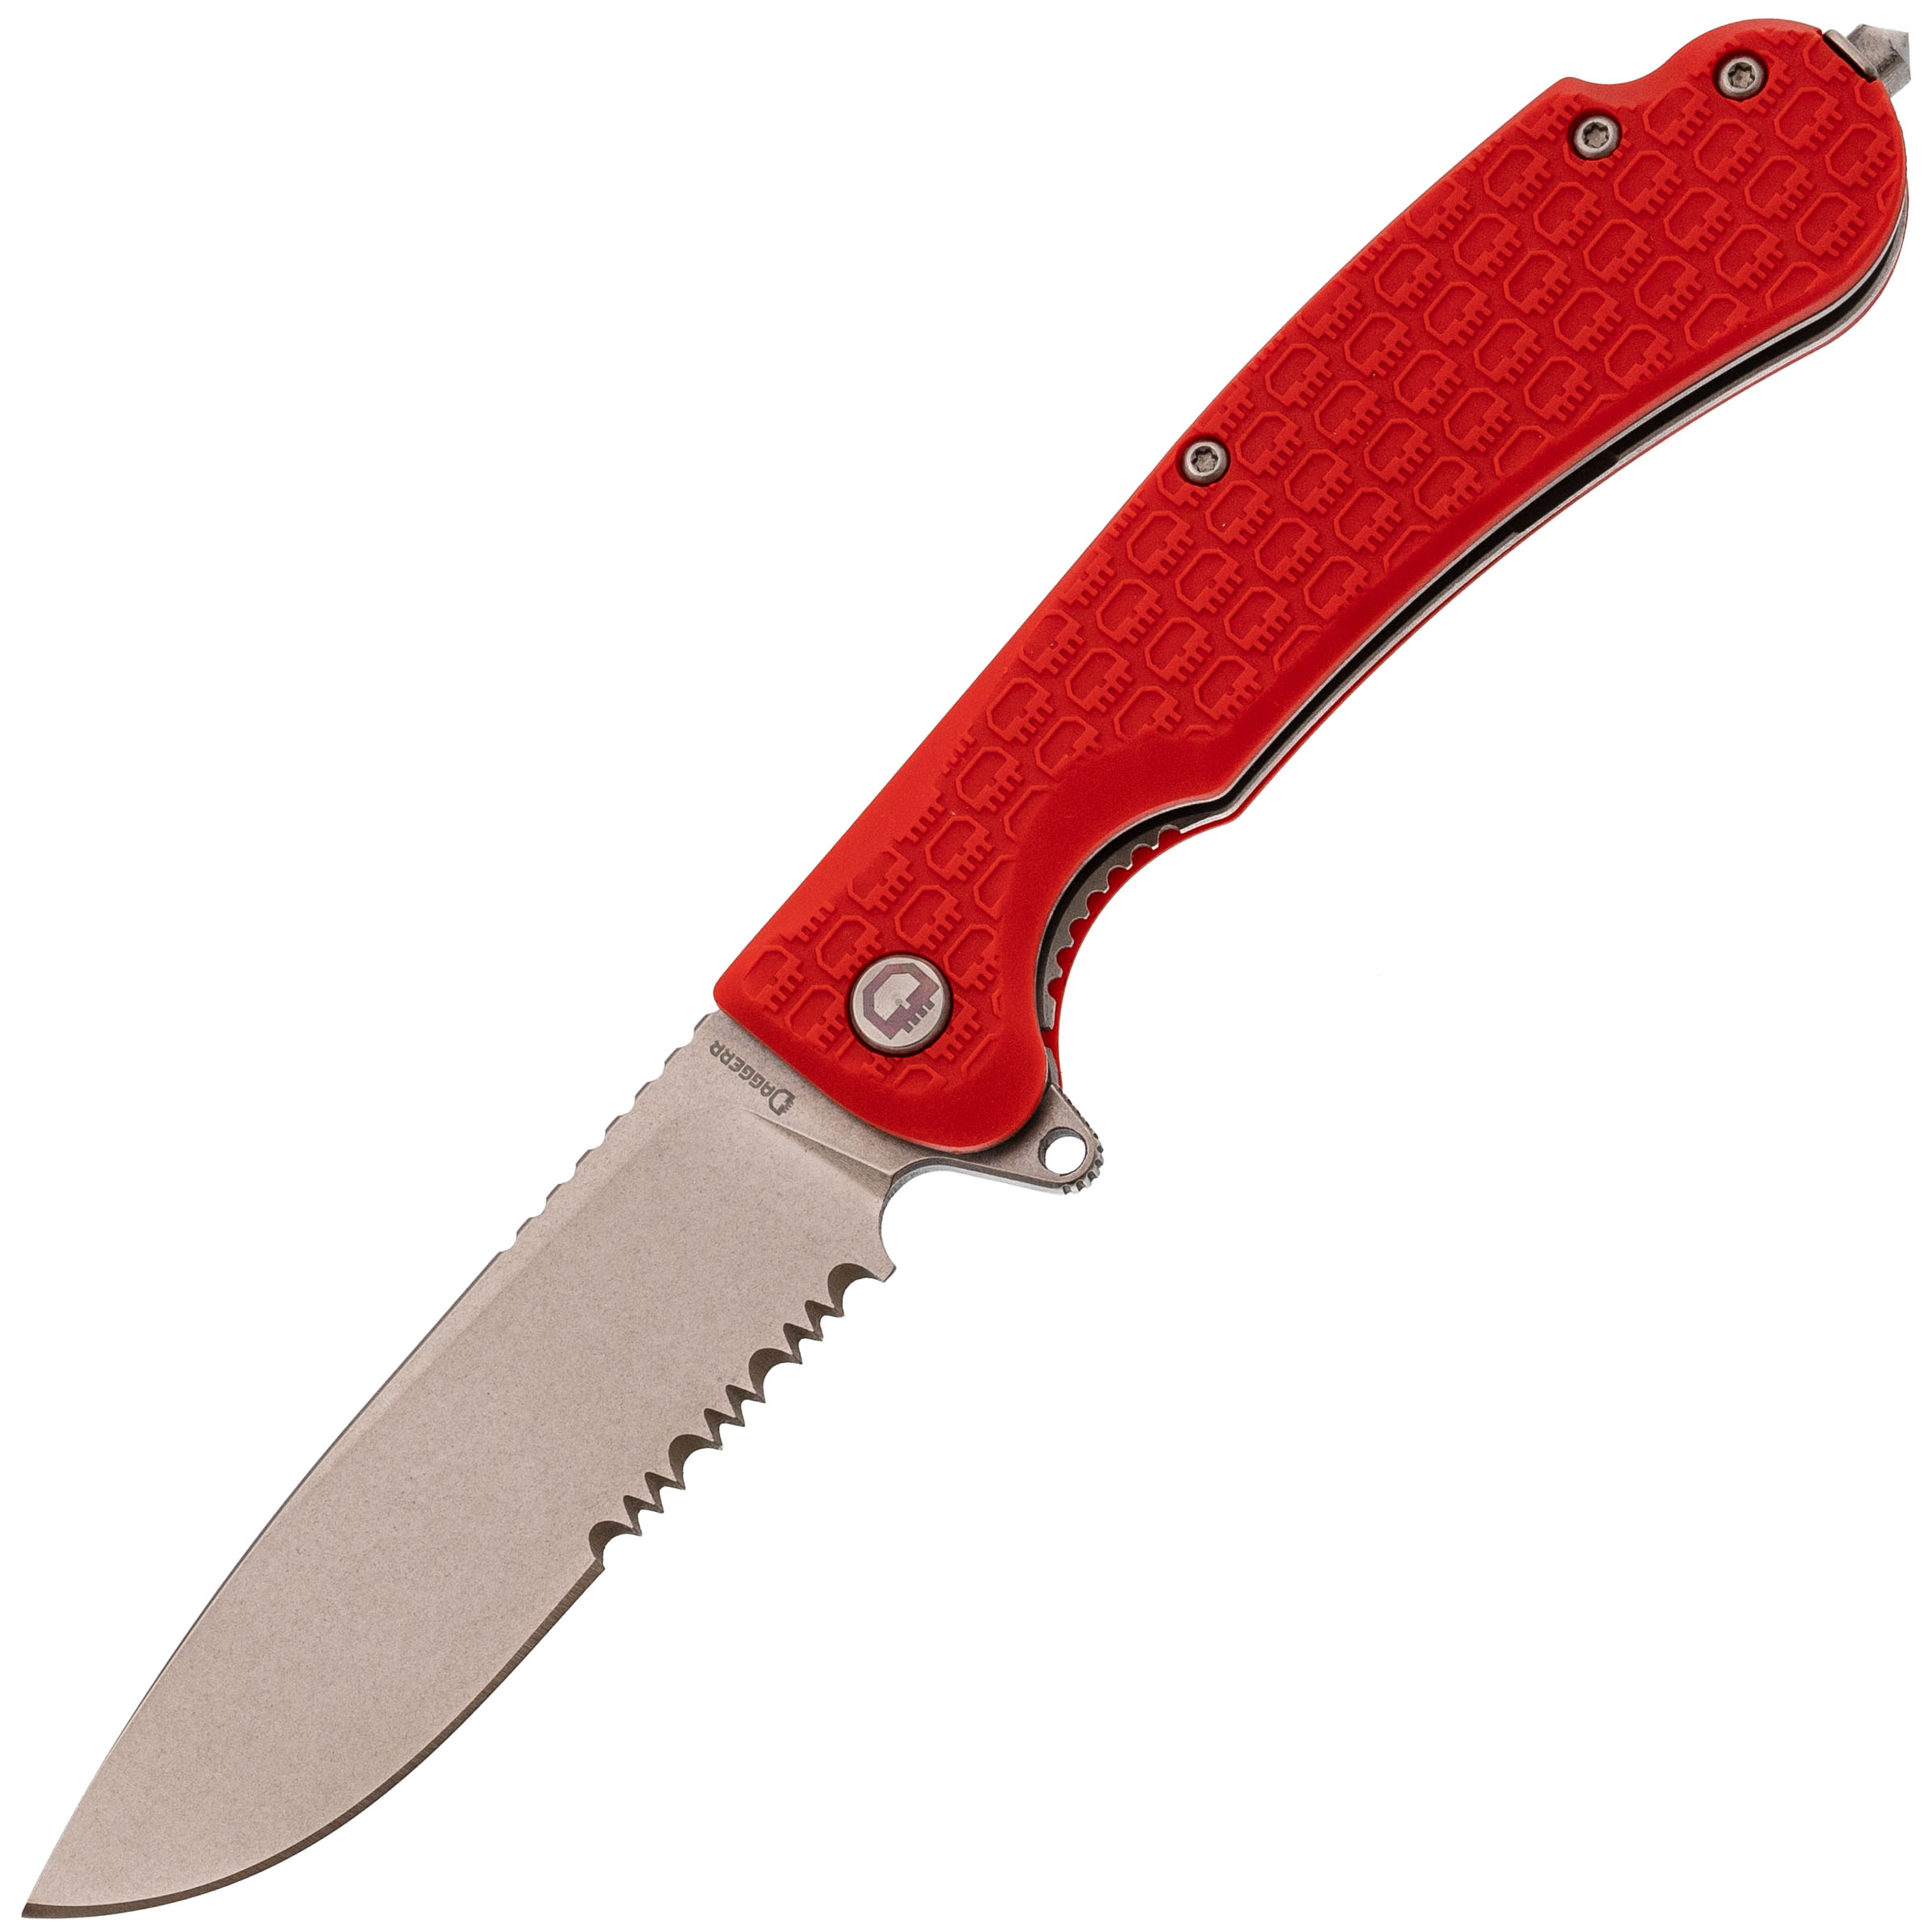 Складной нож Daggerr Wocket Orange SW Serrated, сталь 8Cr14MoV, рукоять FRN складной нож dagger parrot 3 0 all   g10